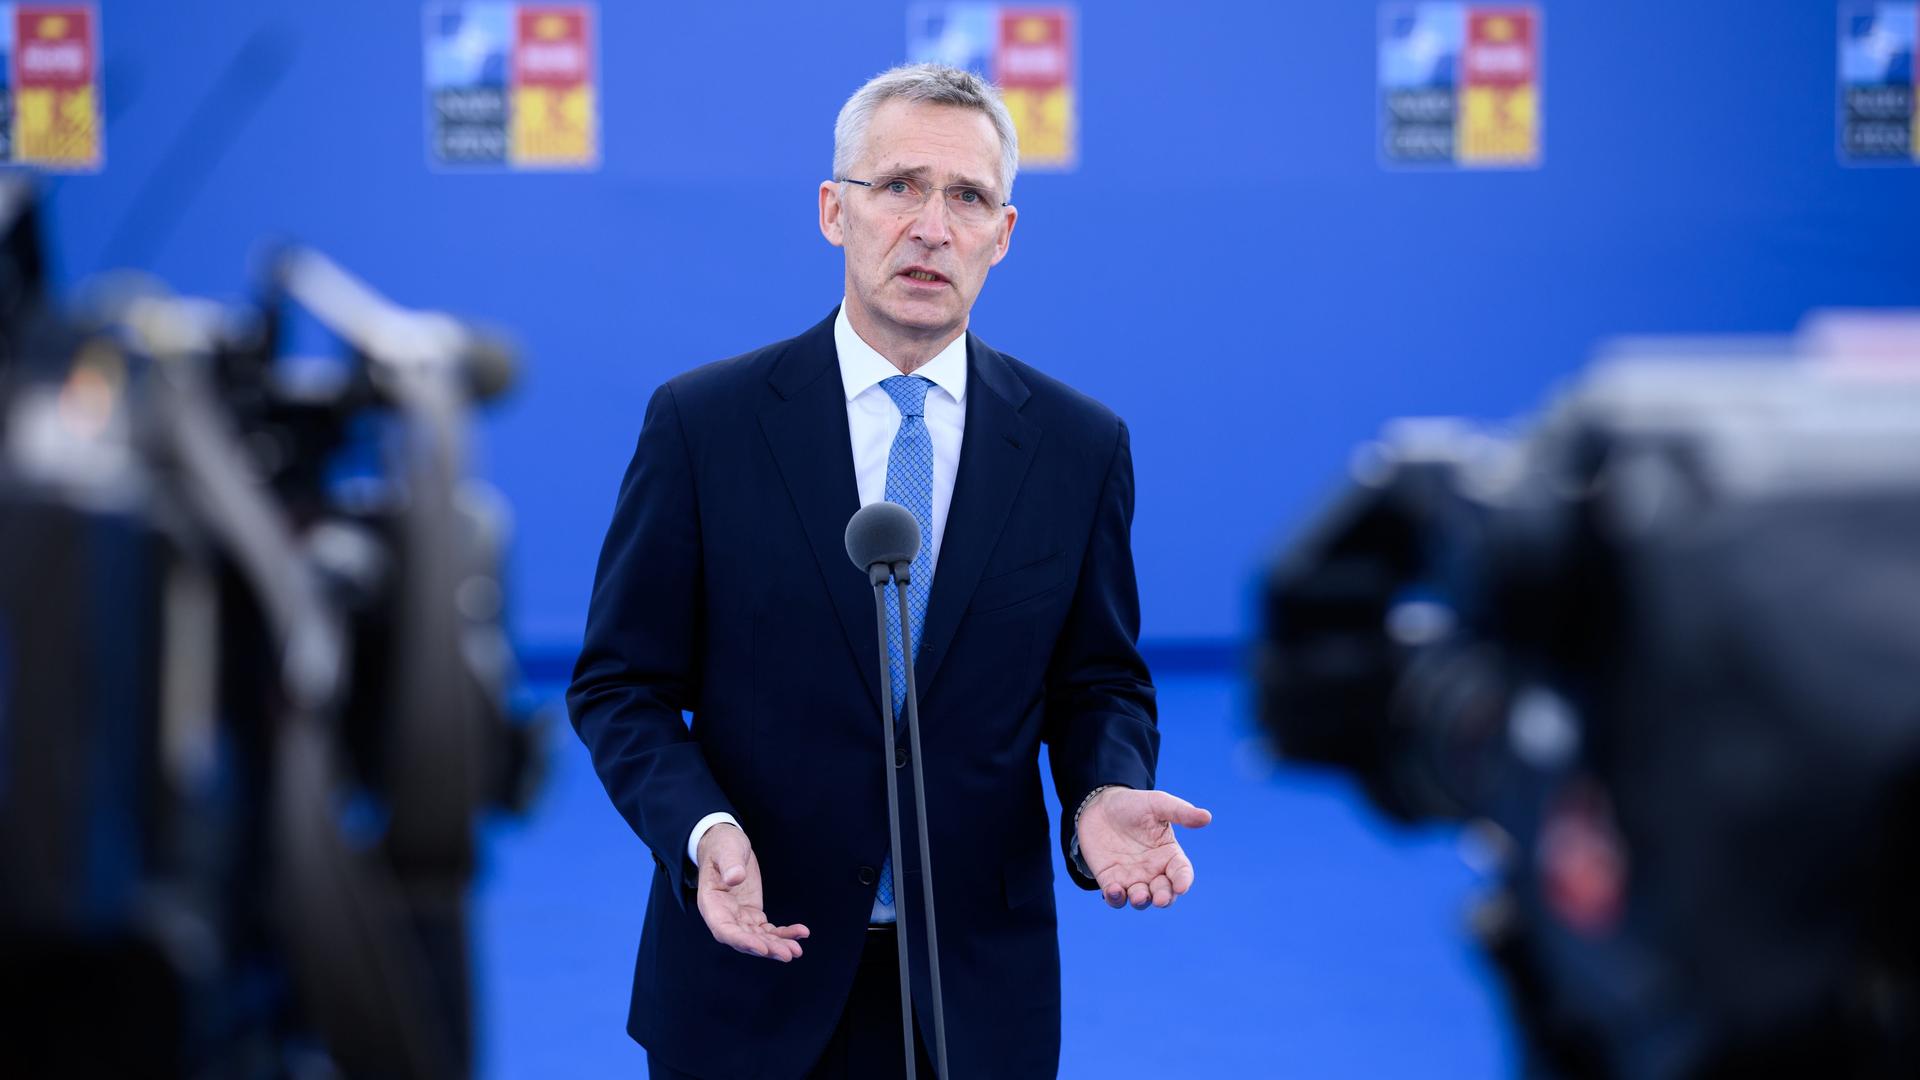 NATO-Gipfel - Stoltenberg spricht von größter Herausforderung seit Zweitem Weltkrieg